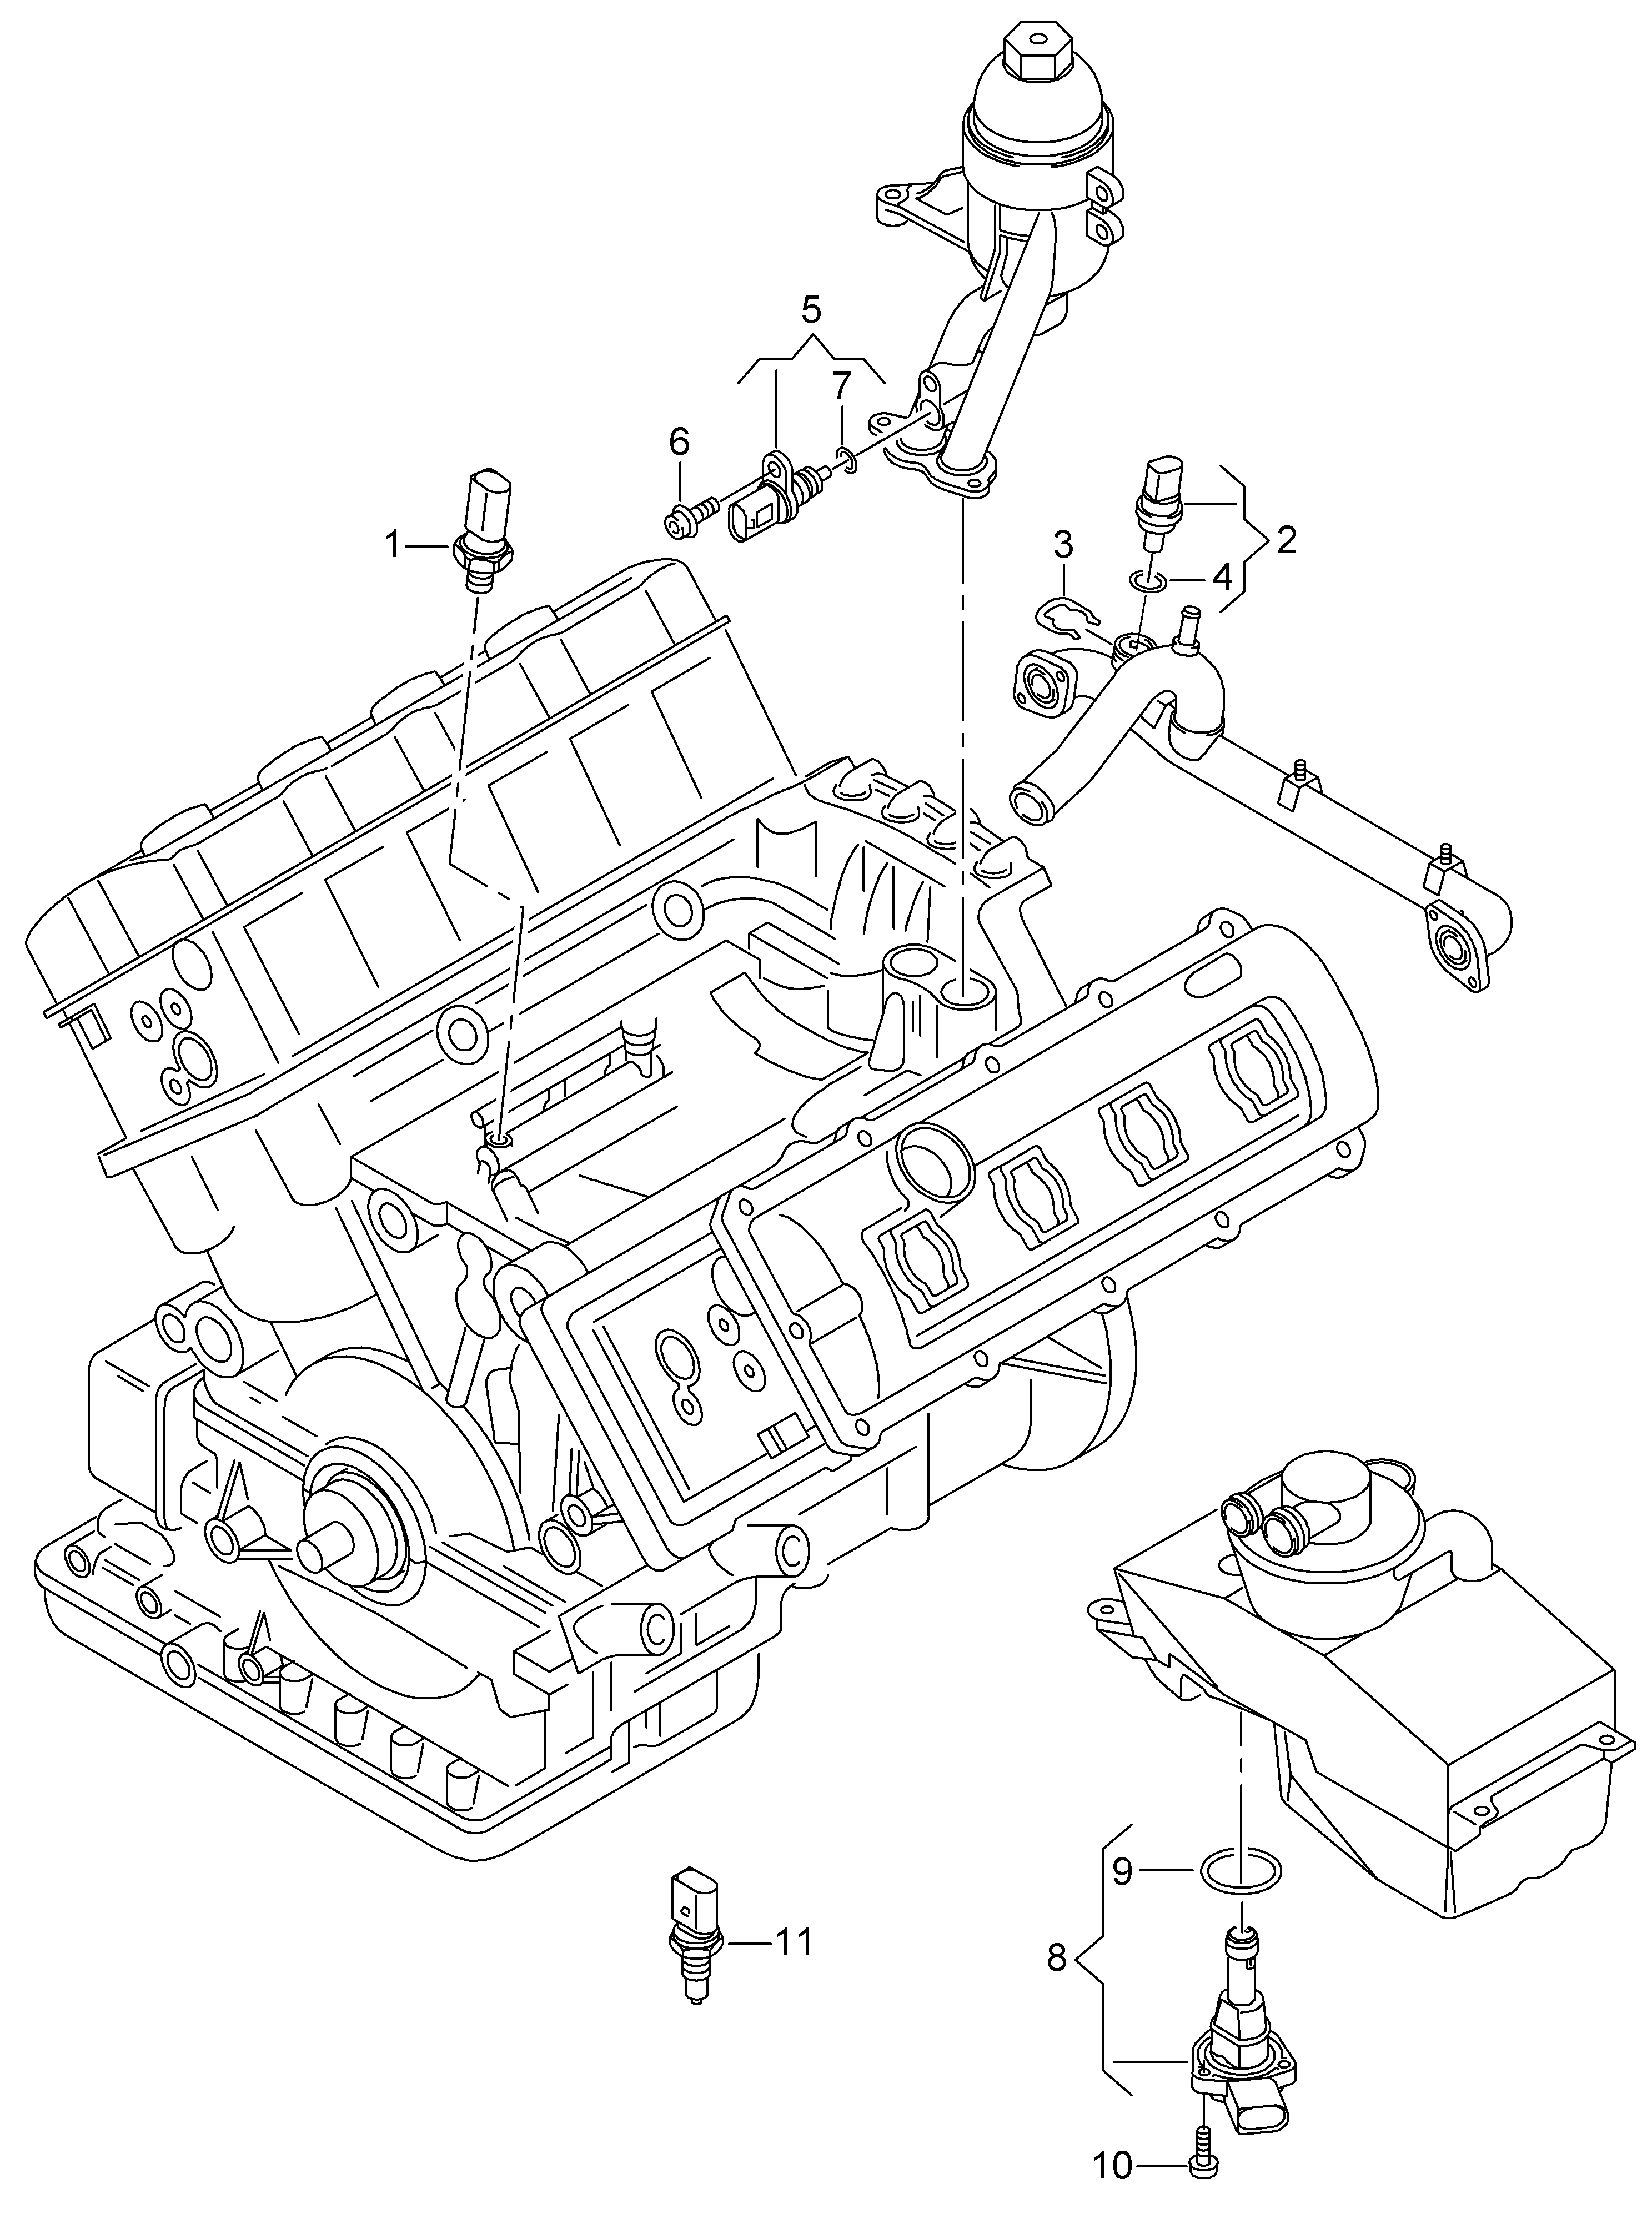 spinace a cidla na motoru a
prevodovku - Audi R8(R8)  